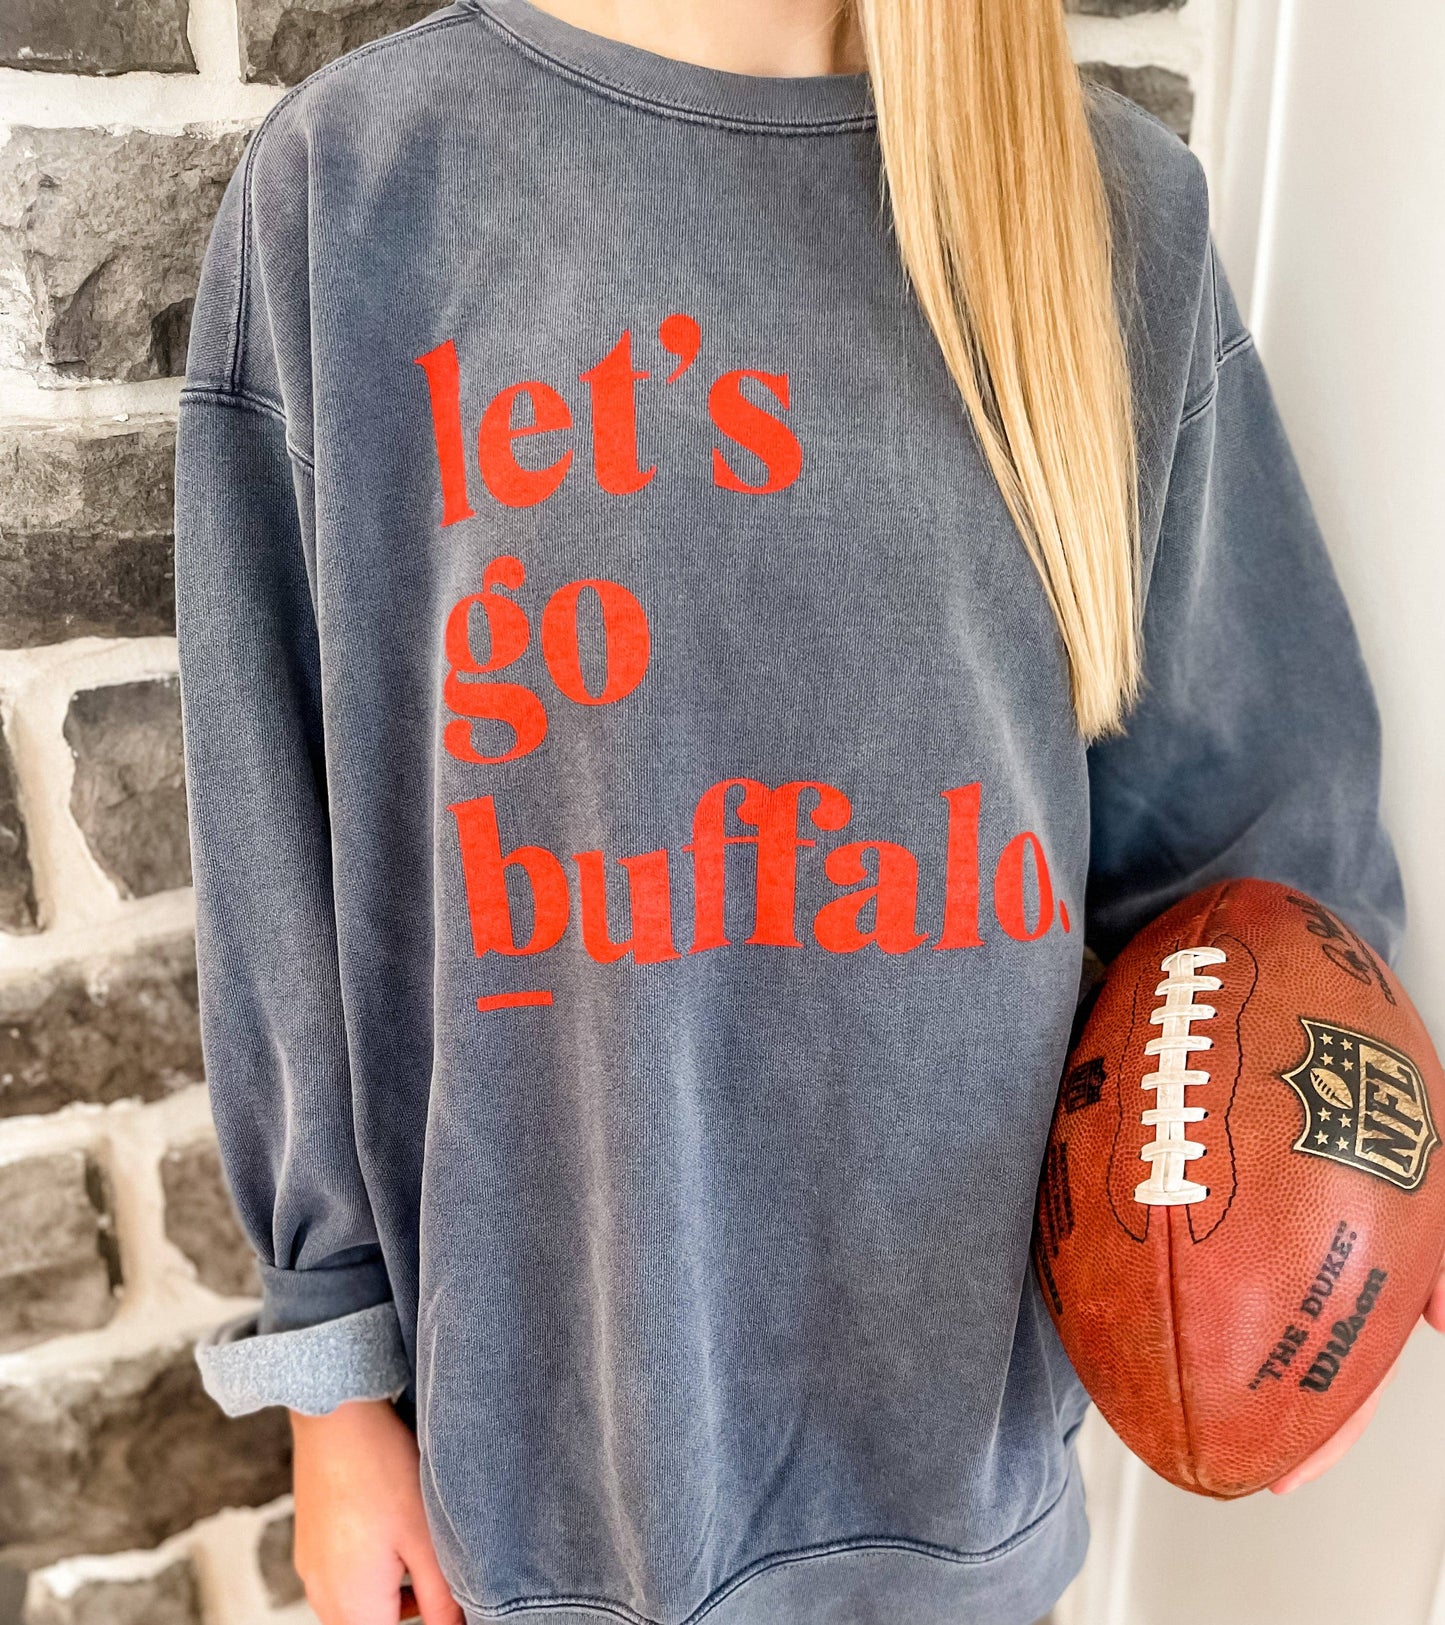 Let’s Go Buffalo Crew Sweatshirt